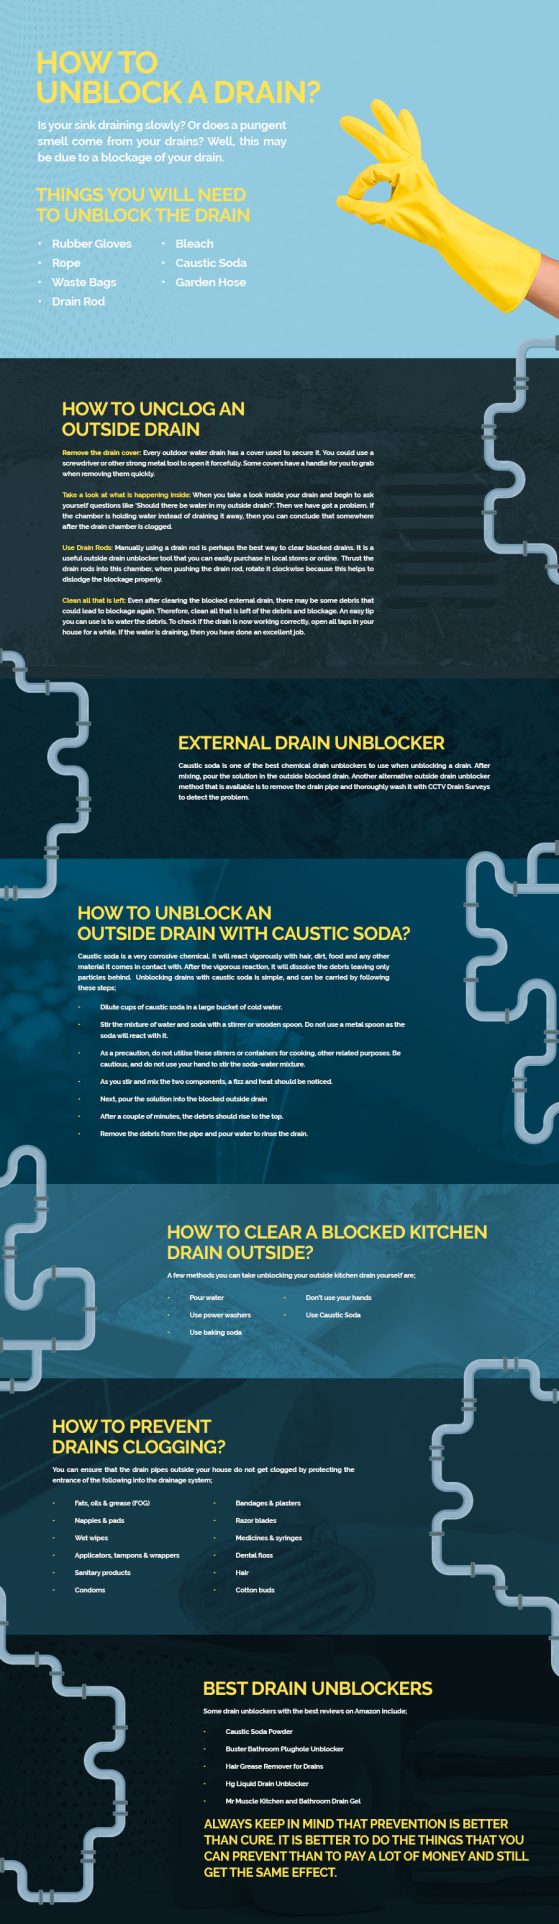 5 Best Ways to Unclog Drains